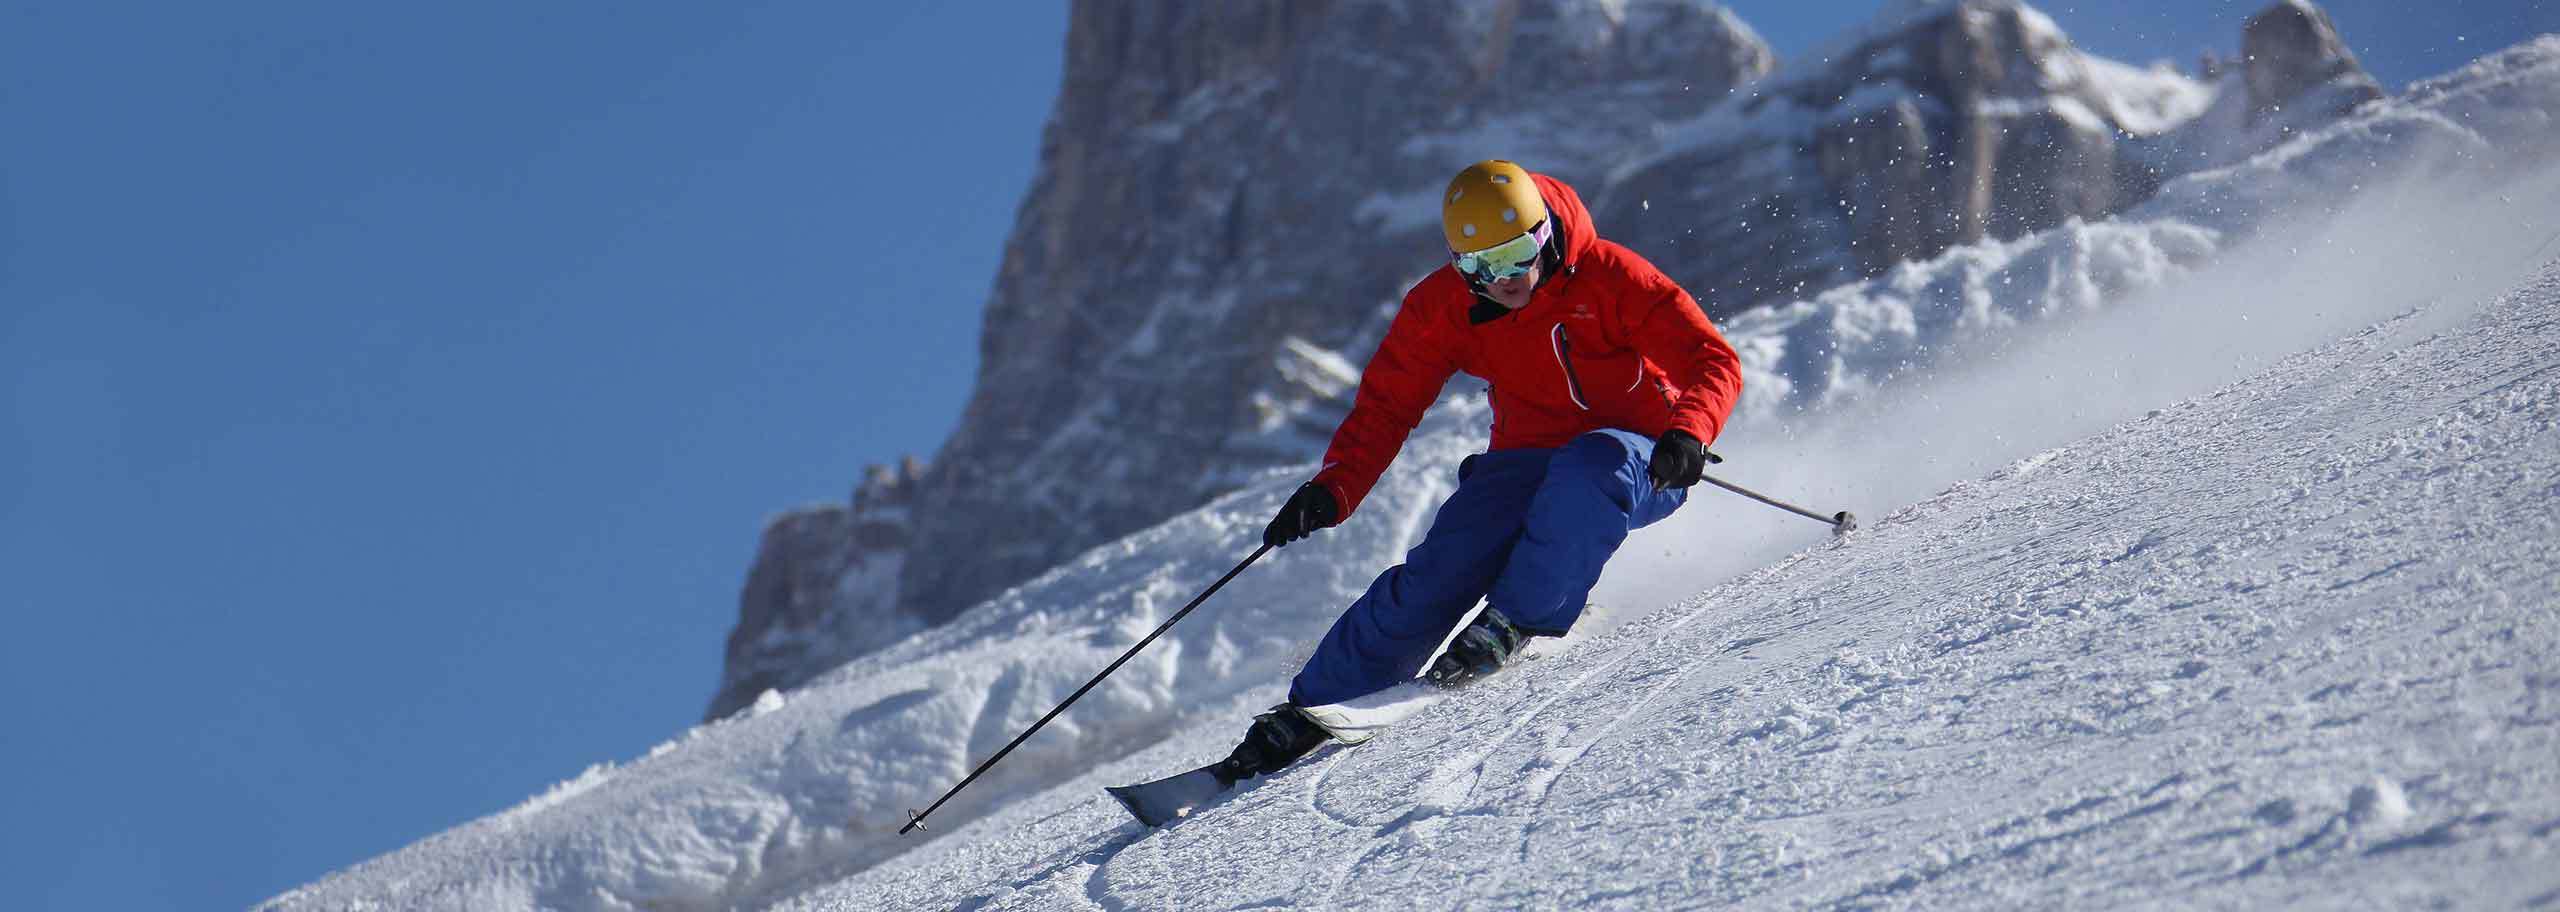 Ski Safari in Val di Zoldo, On-piste Skiing Trips